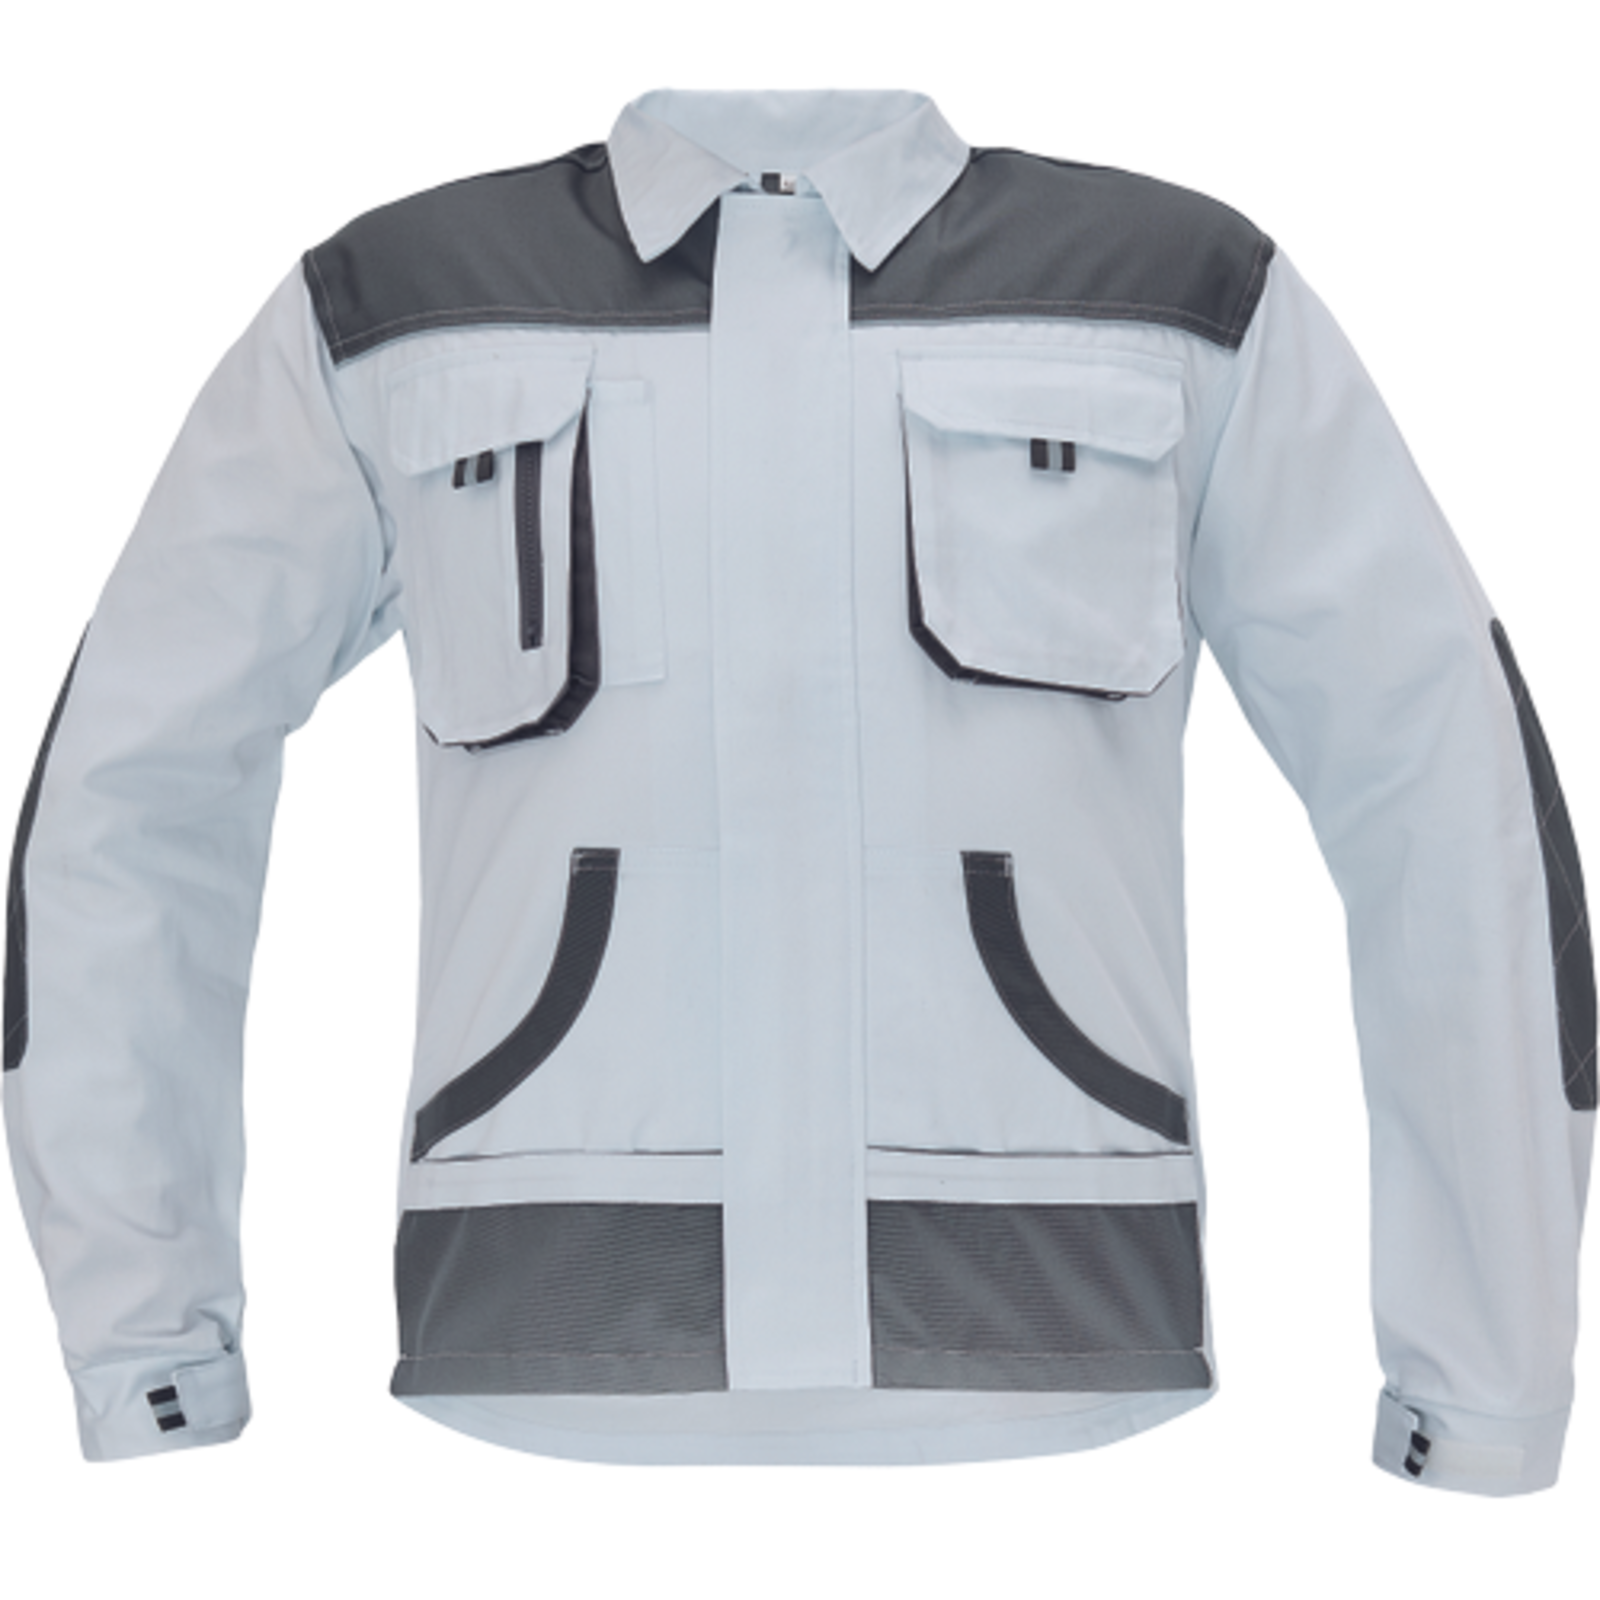 Odolná pracovná bunda Cerva FF Hans - veľkosť: 48, farba: biela/sivá